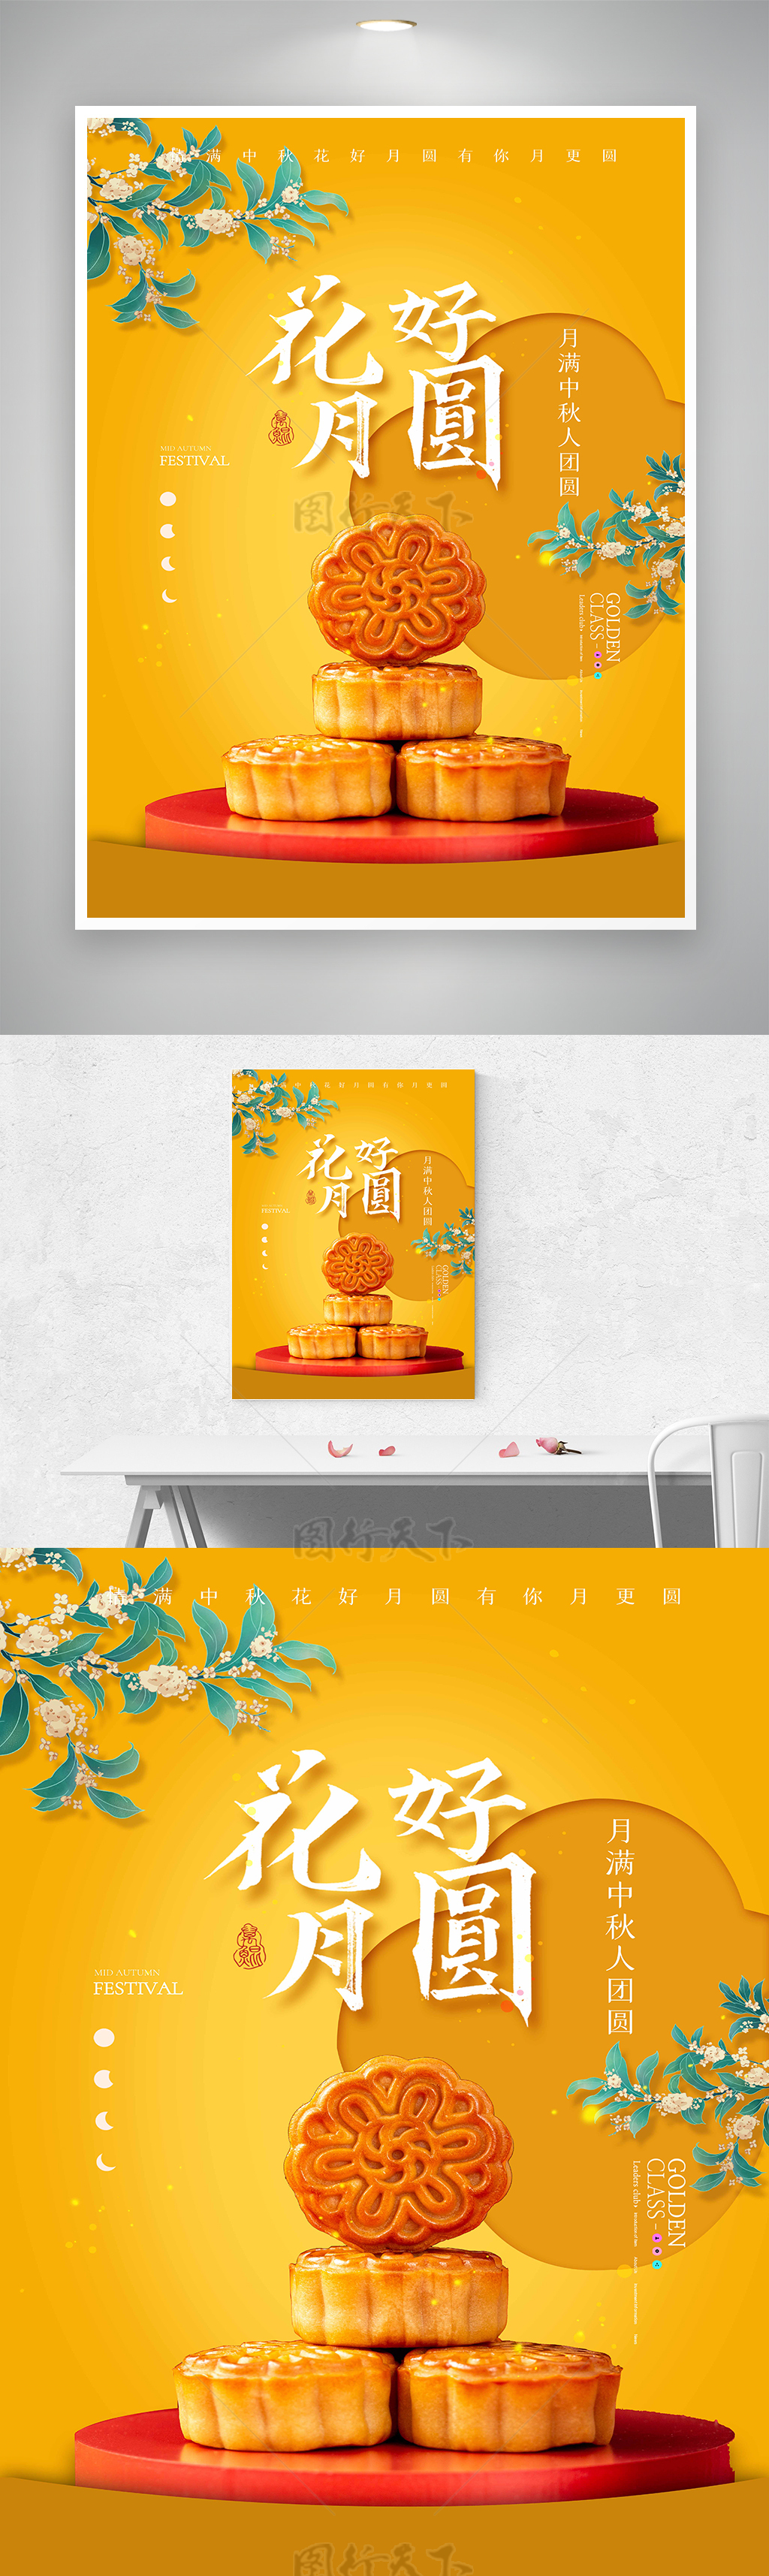 创意中秋节活动宣传海报素材